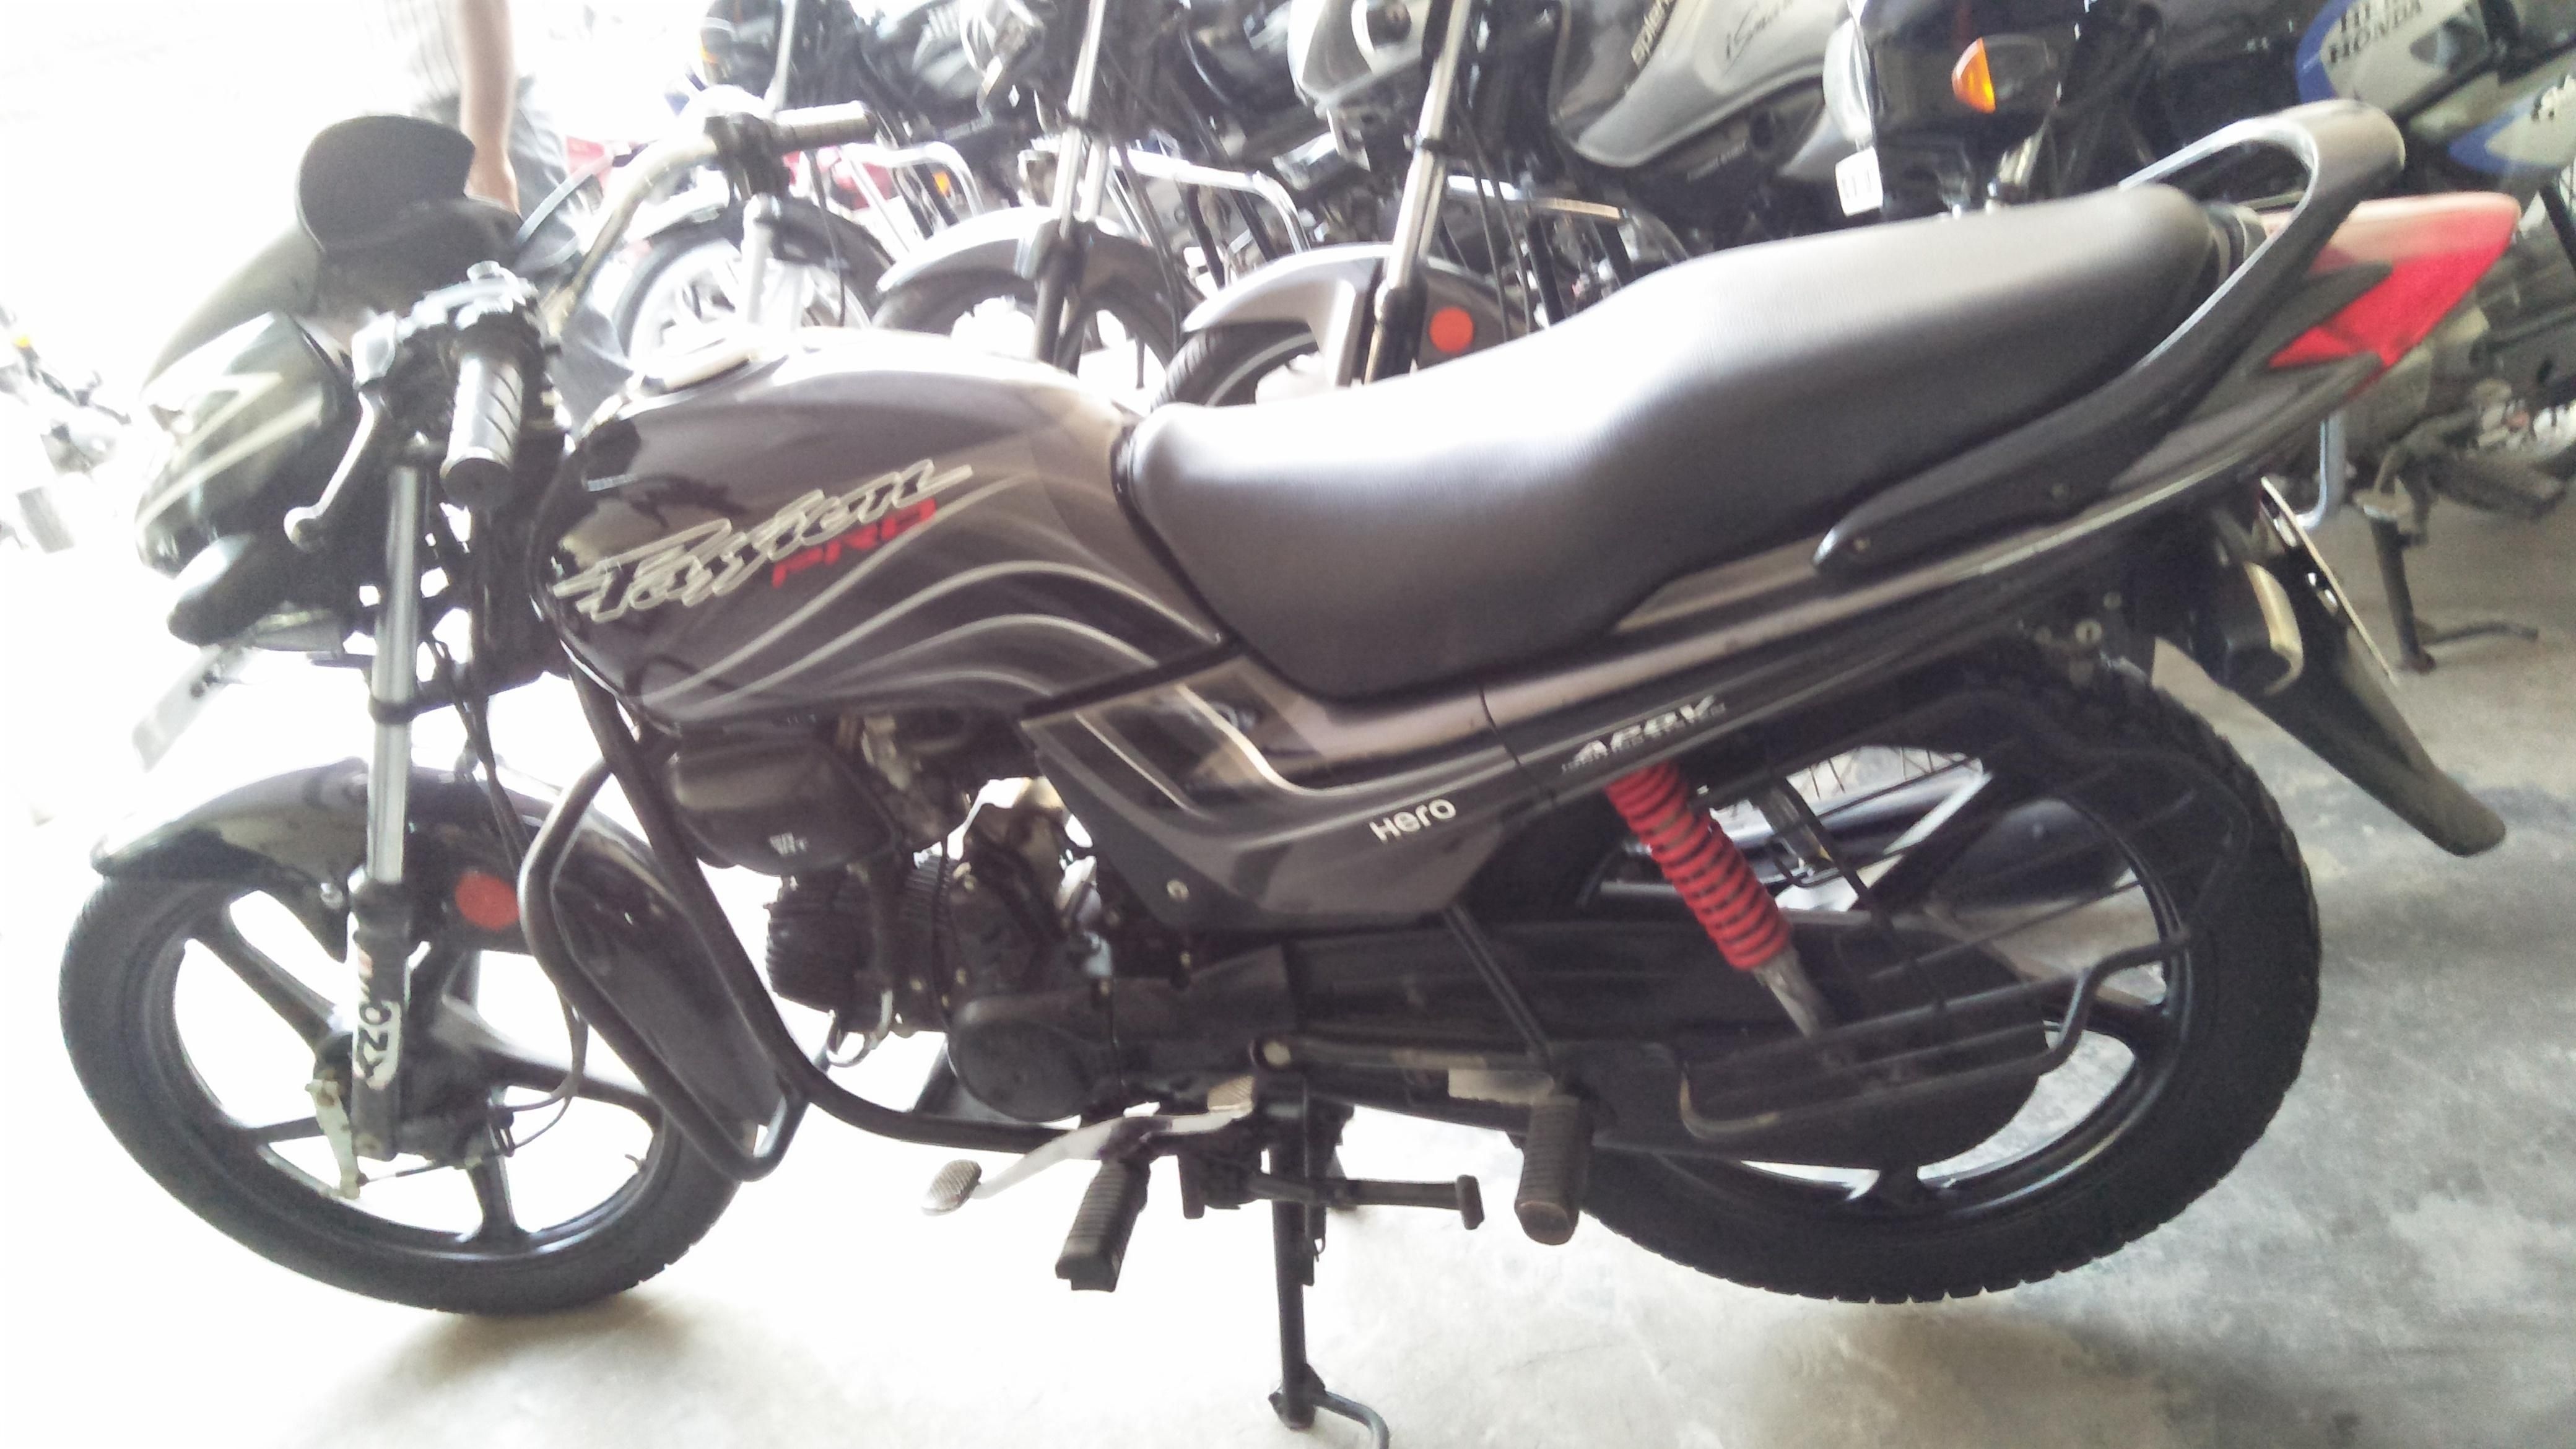 Hero Passion Pro Bike For Sale In Ludhiana Id 1415848869 Droom